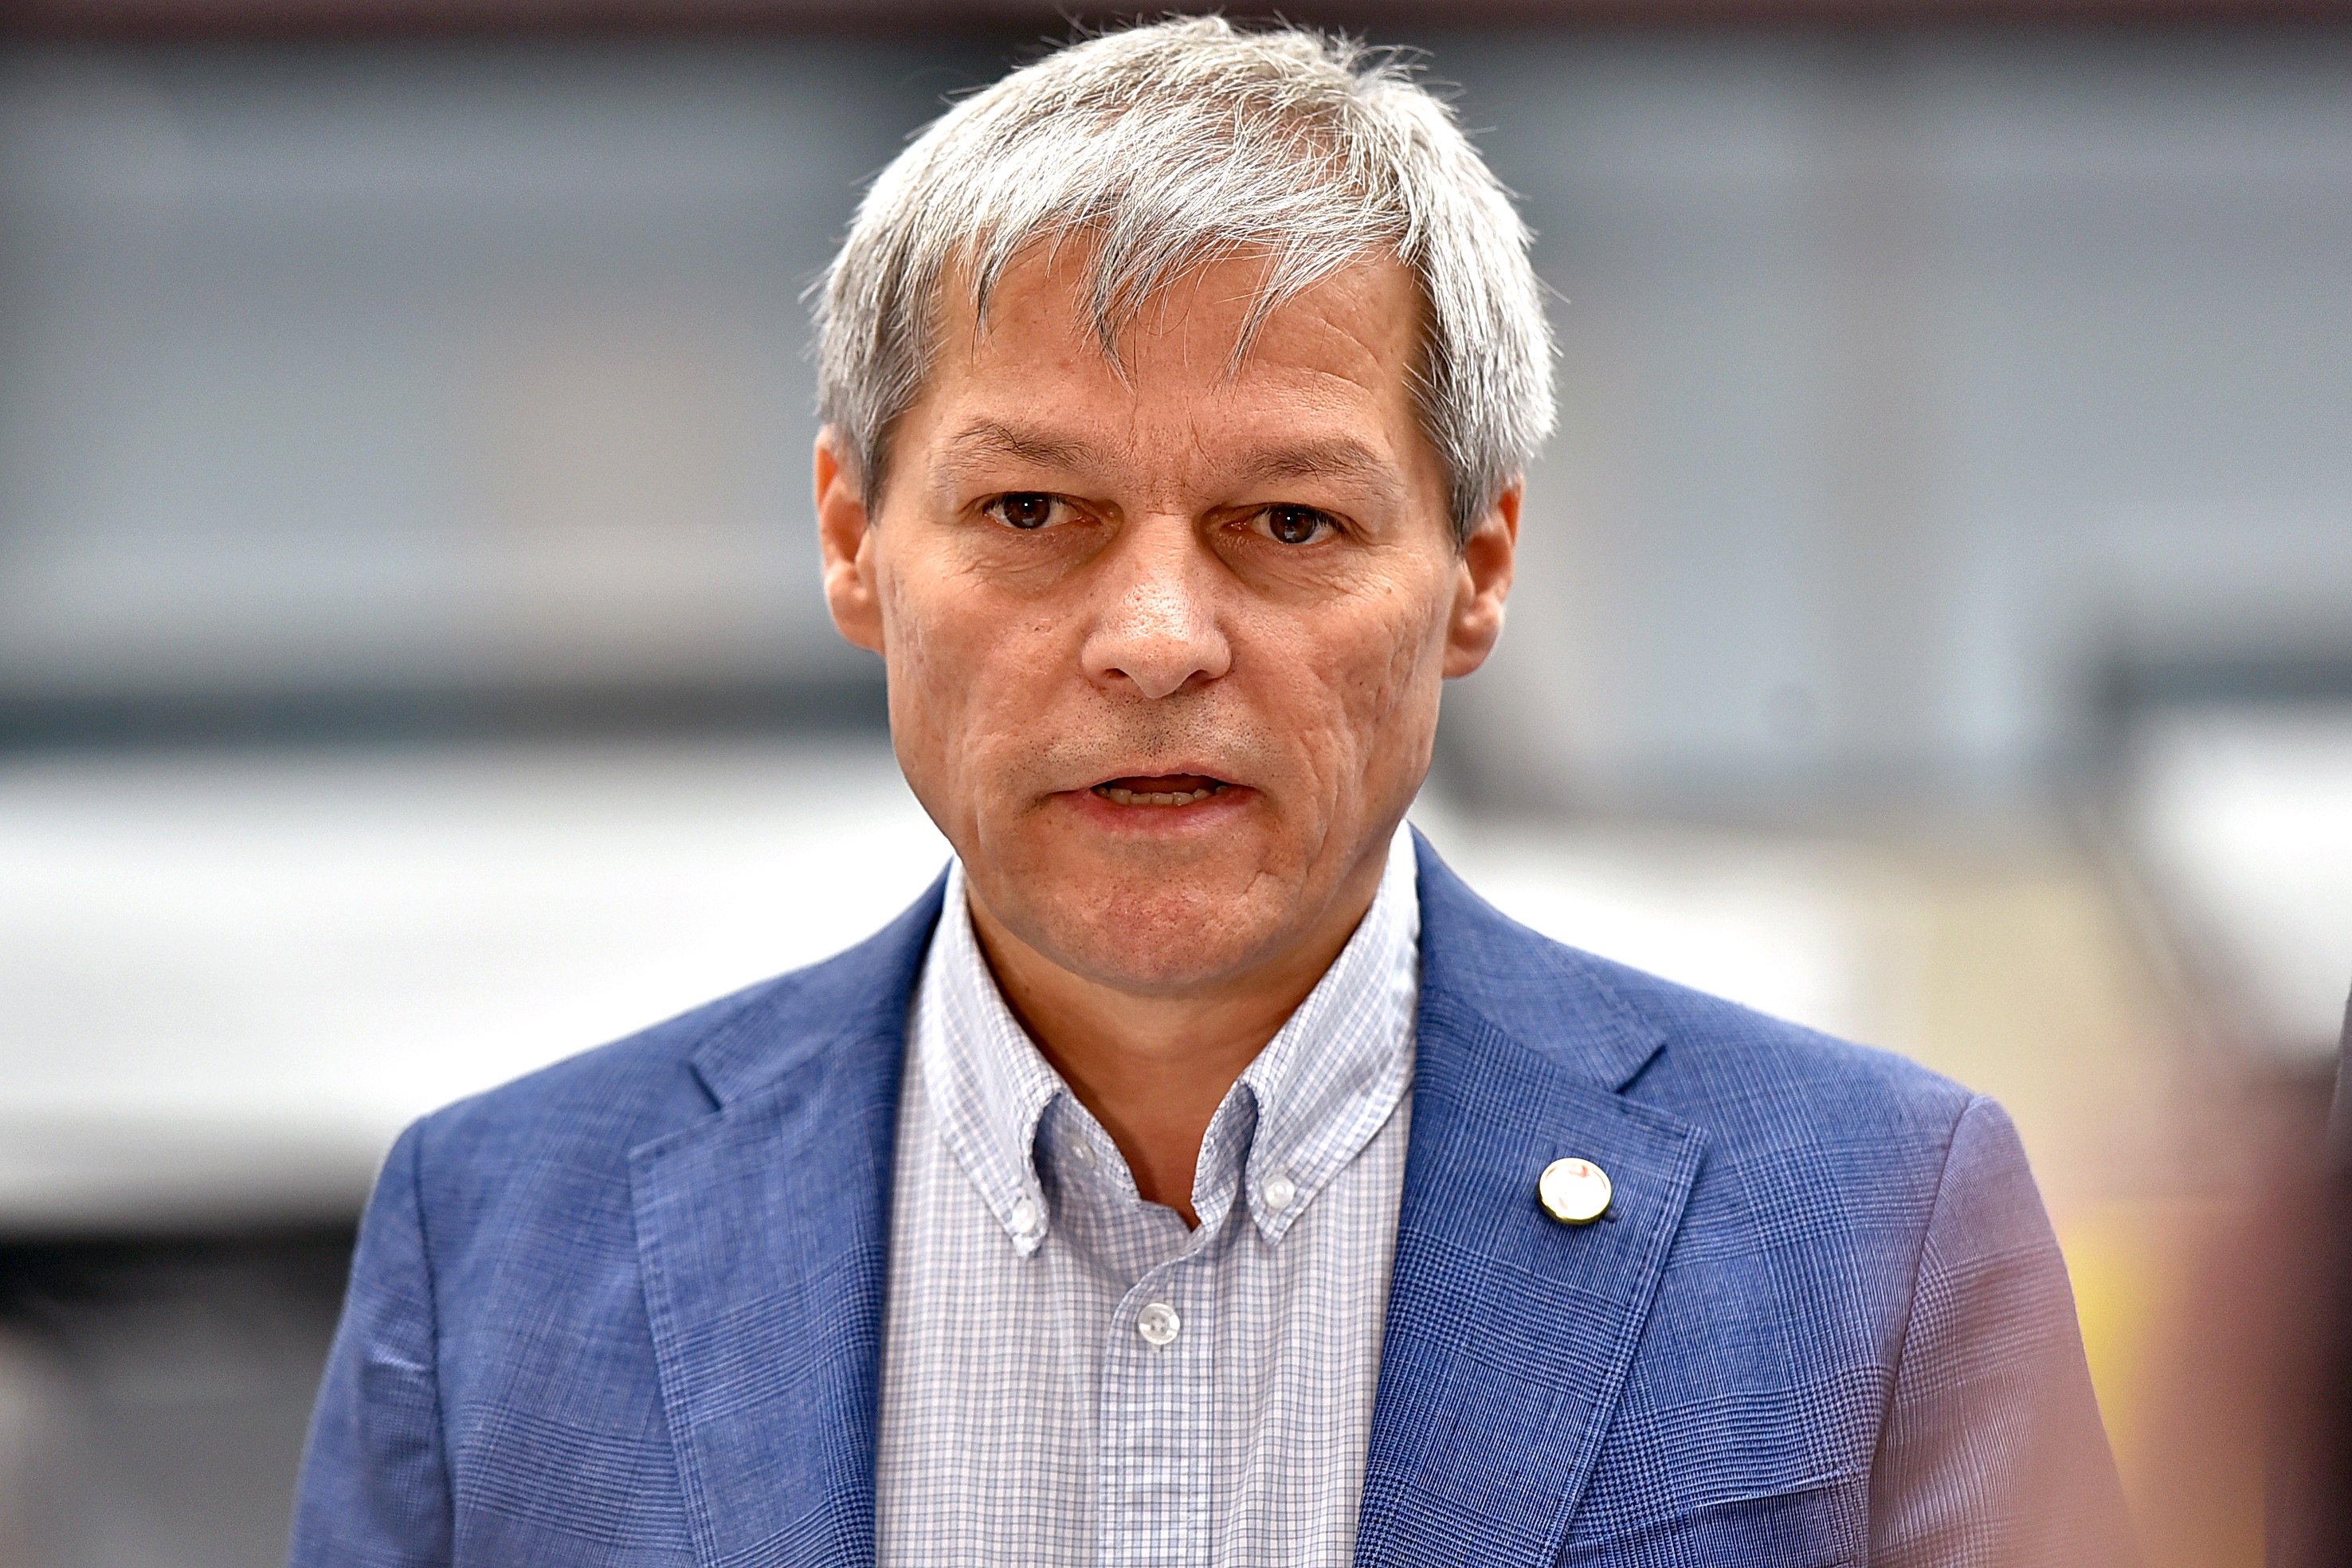 Cioloș, nemulțumit: ”Modul în care a procedat Florin Cîțu este absolut inacceptabil”